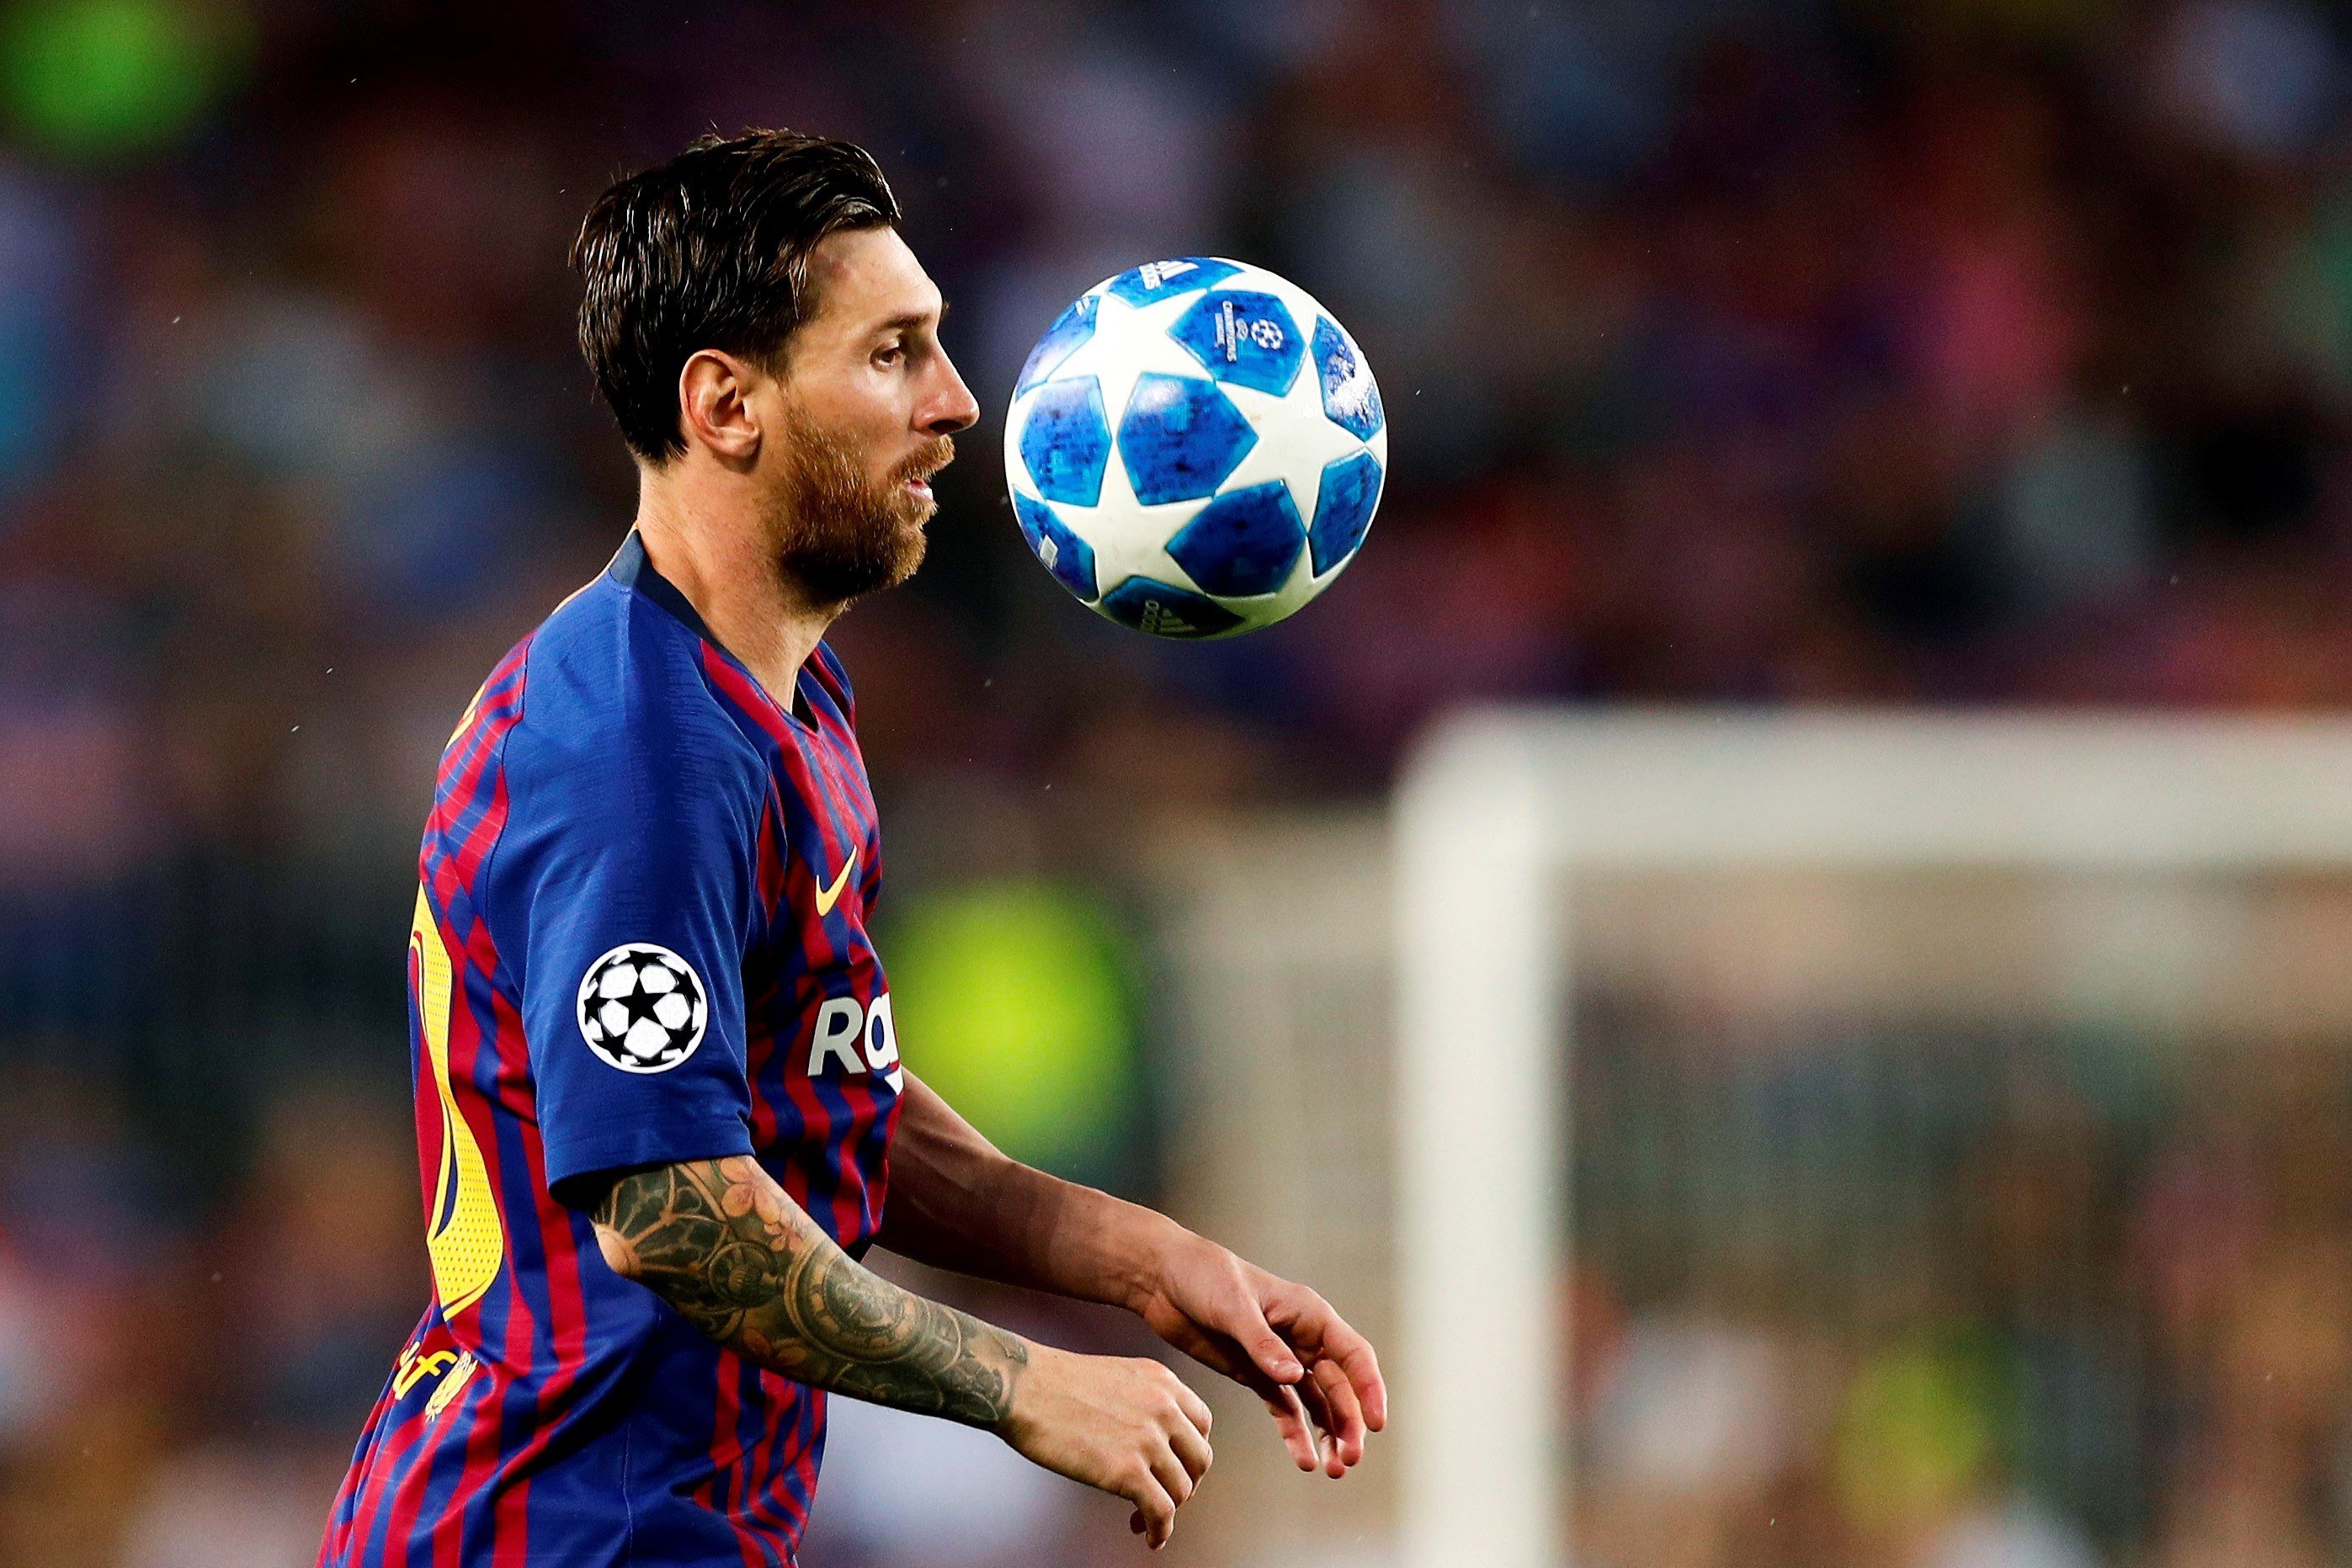 La prensa alucina con la 'masterclass' de Messi